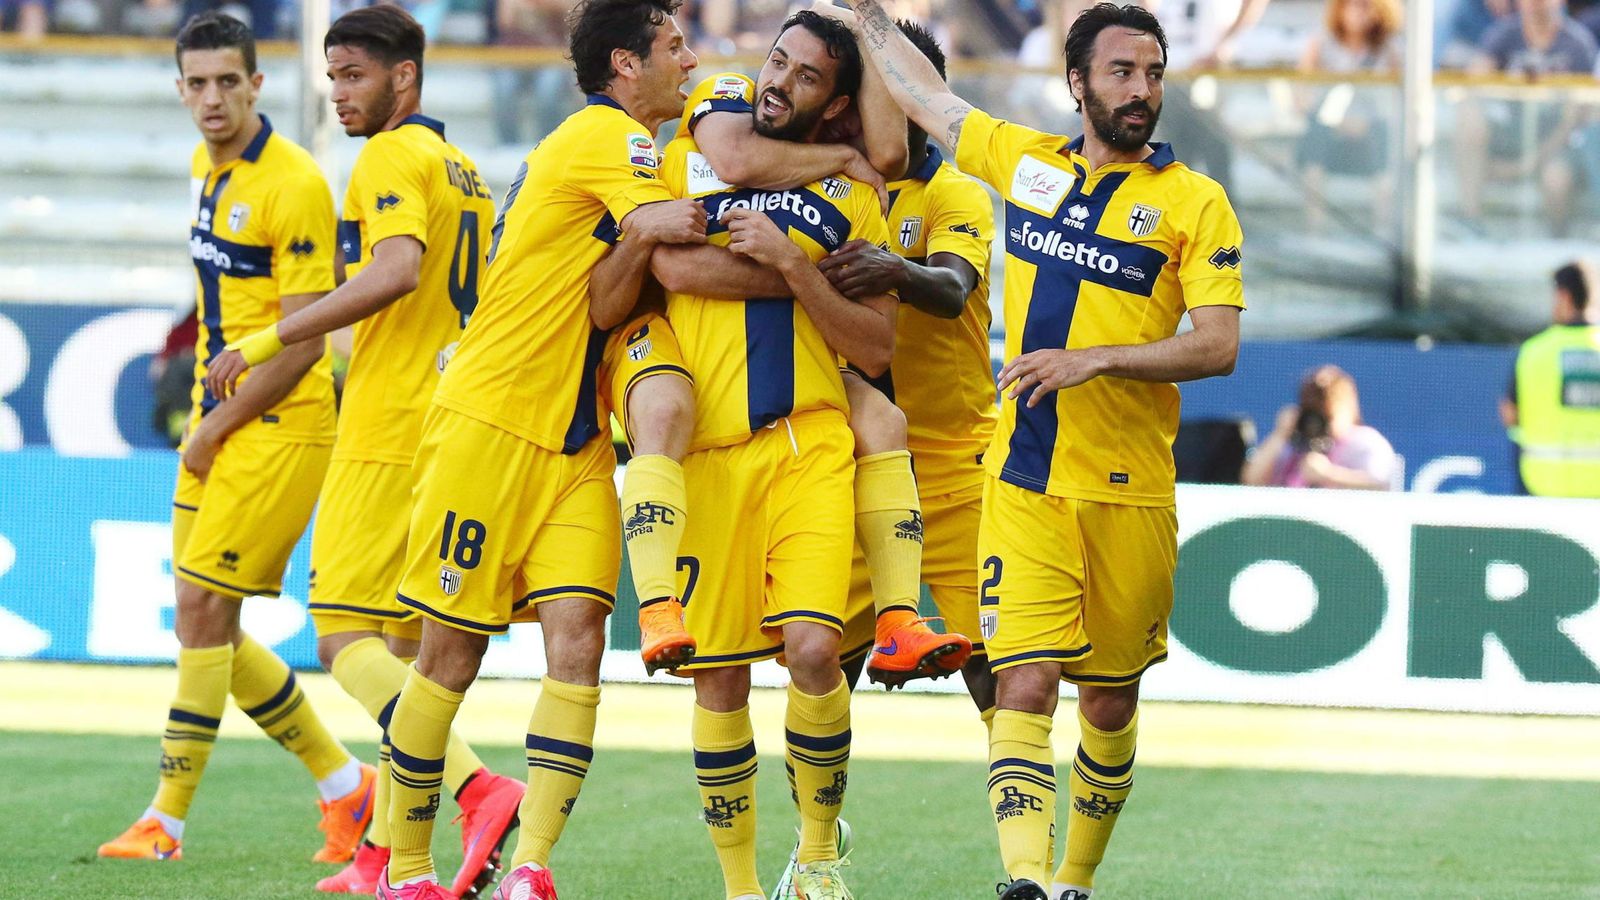 Foto: El Parma quedó último en la Serie A y descendió a Serie B (Efe)